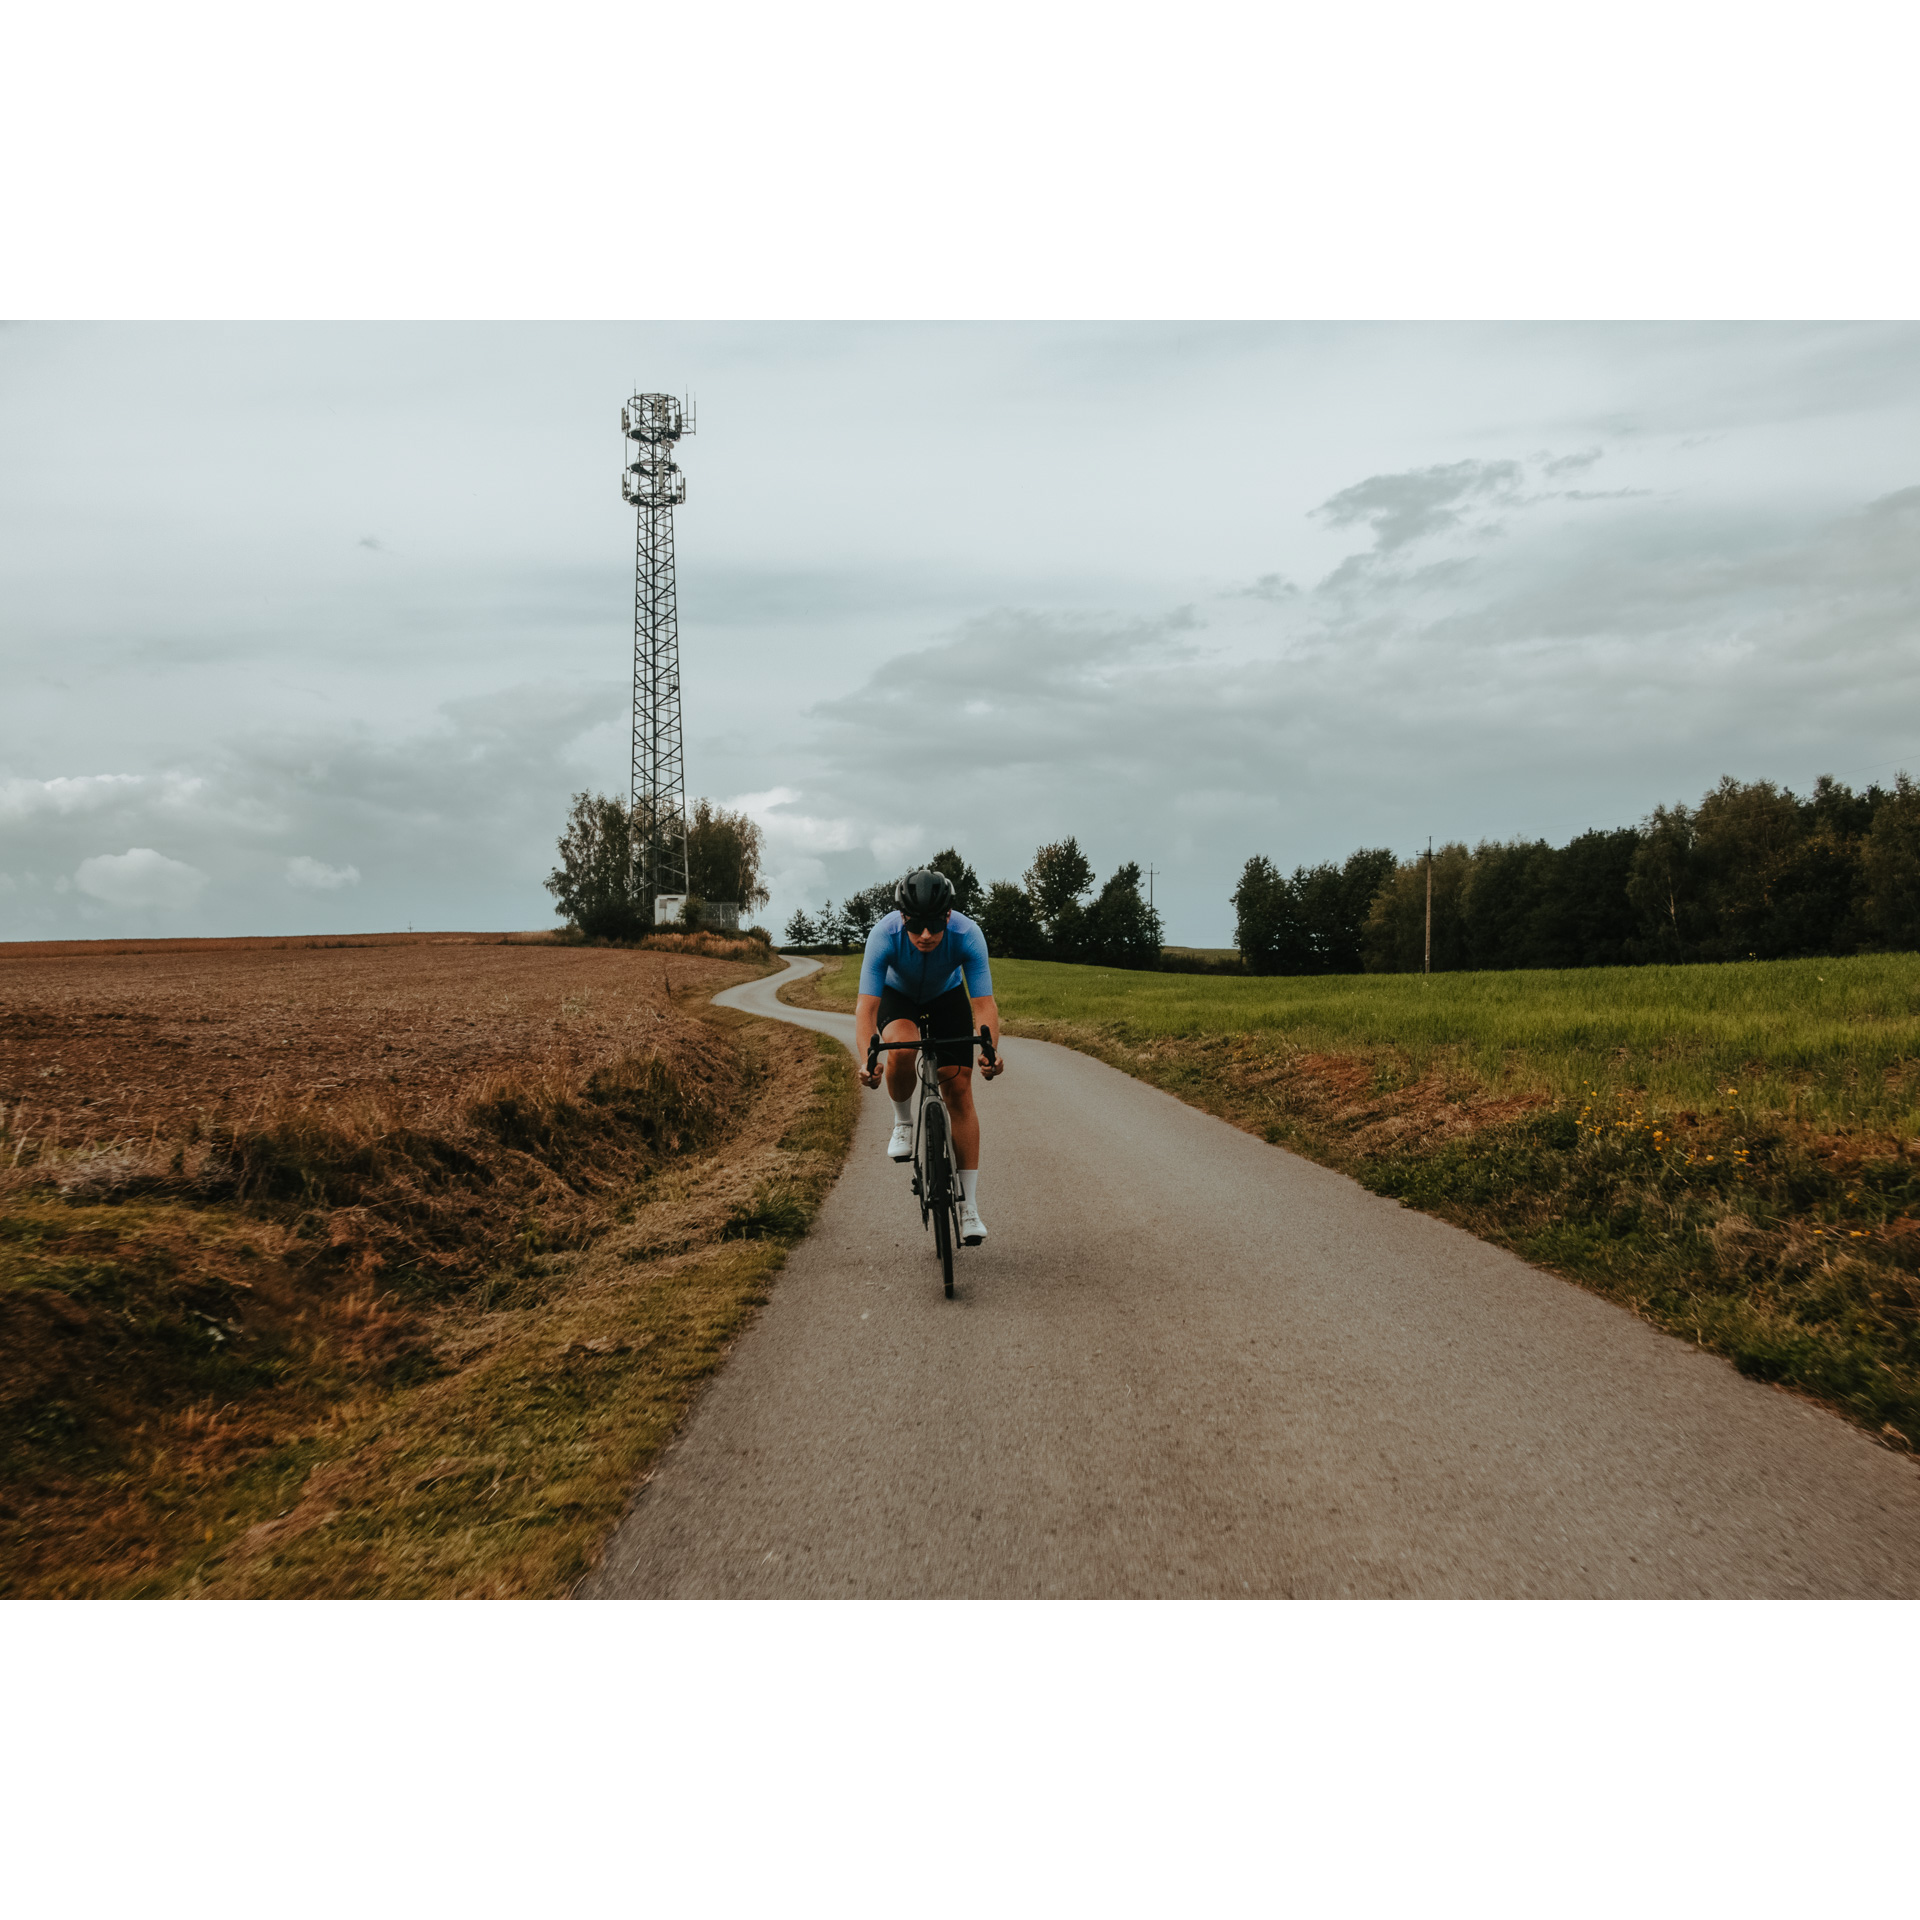 Rowerzysta w niebiesko-czarnym stroju kolarskim, kasku i okularach jadący rowerem asfaltową drogą wśród łąk i pól, w tle drzewa, szare niebo i wysoki słup elektryczny